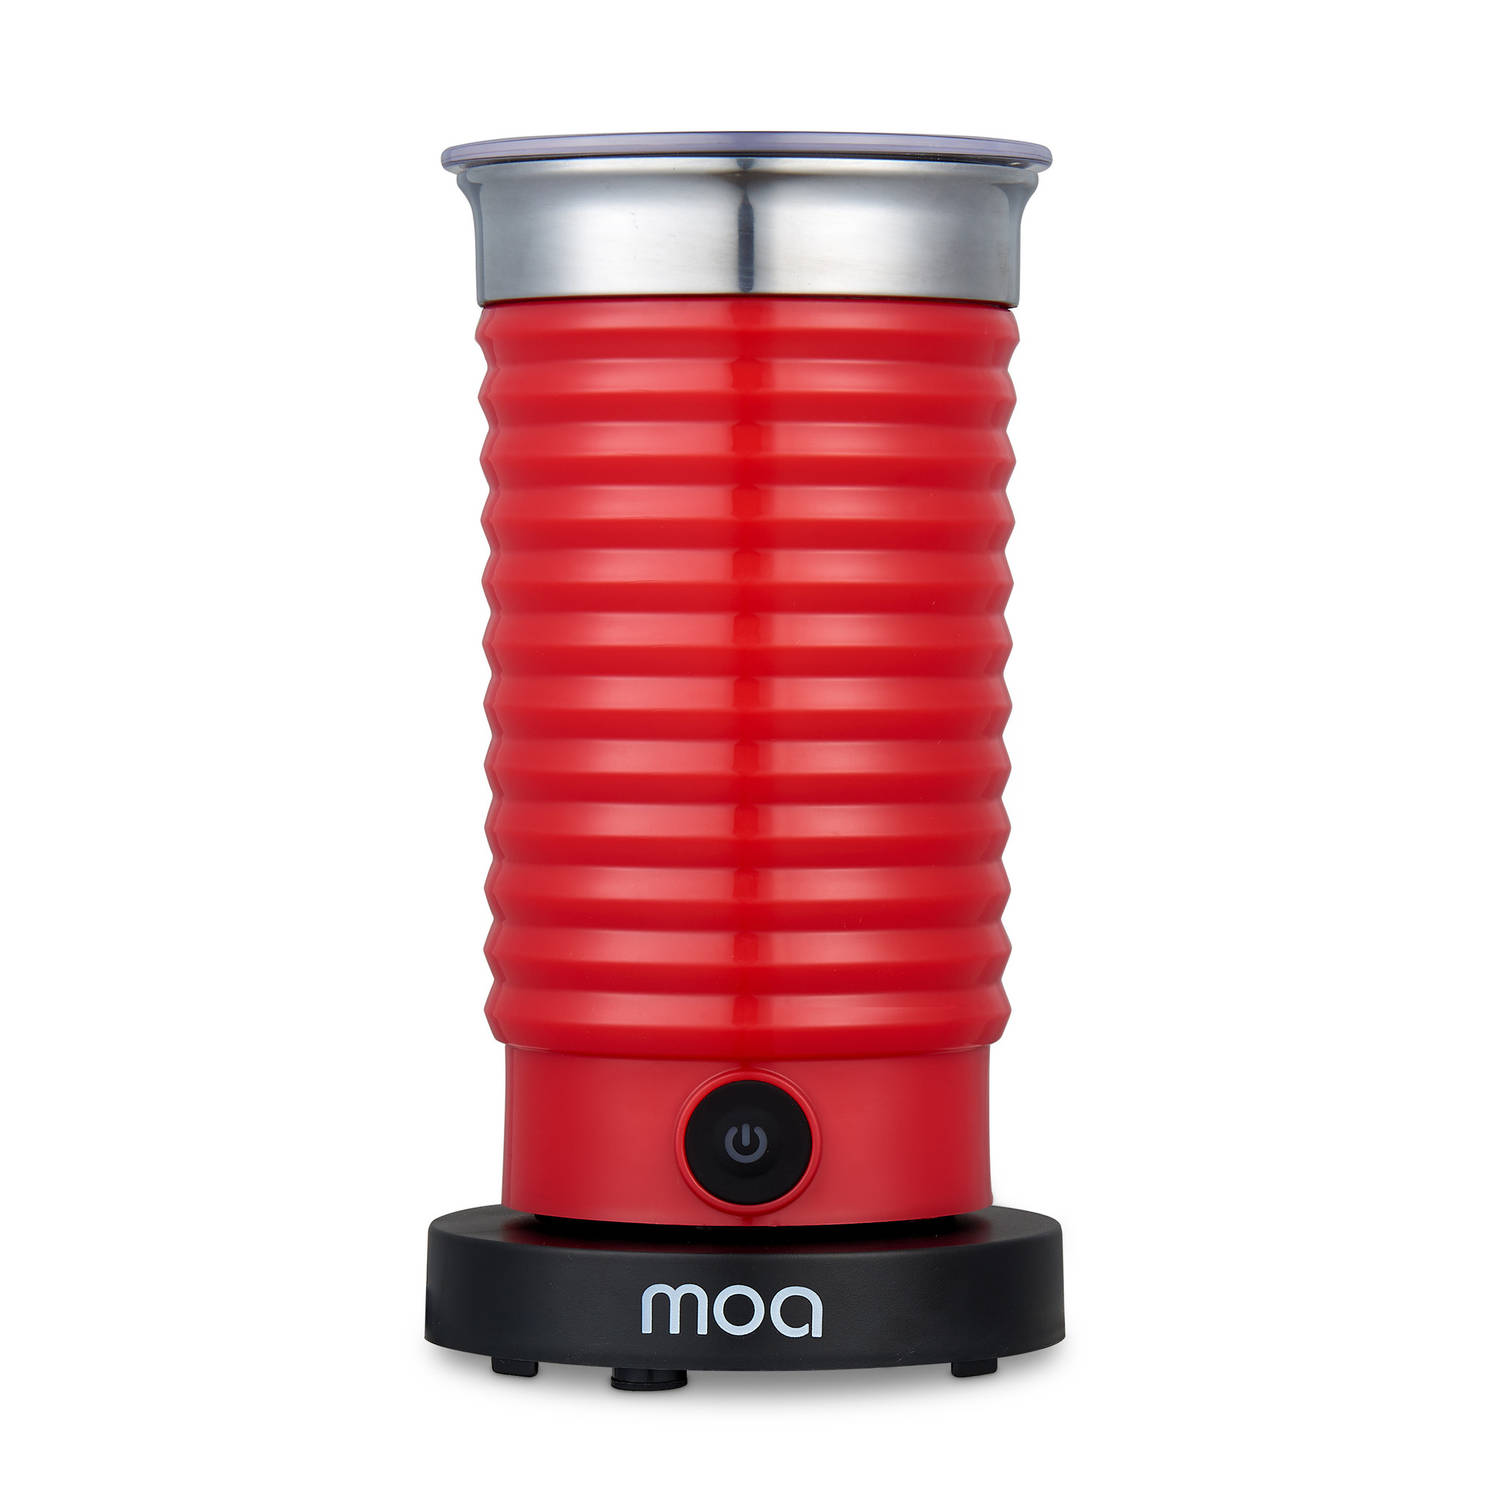 wij heilig krassen MOA Melkopschuimer Elektrisch - BPA vrij - Voor Opschuimen en Verwarmen -  Rood - MF4R | Blokker